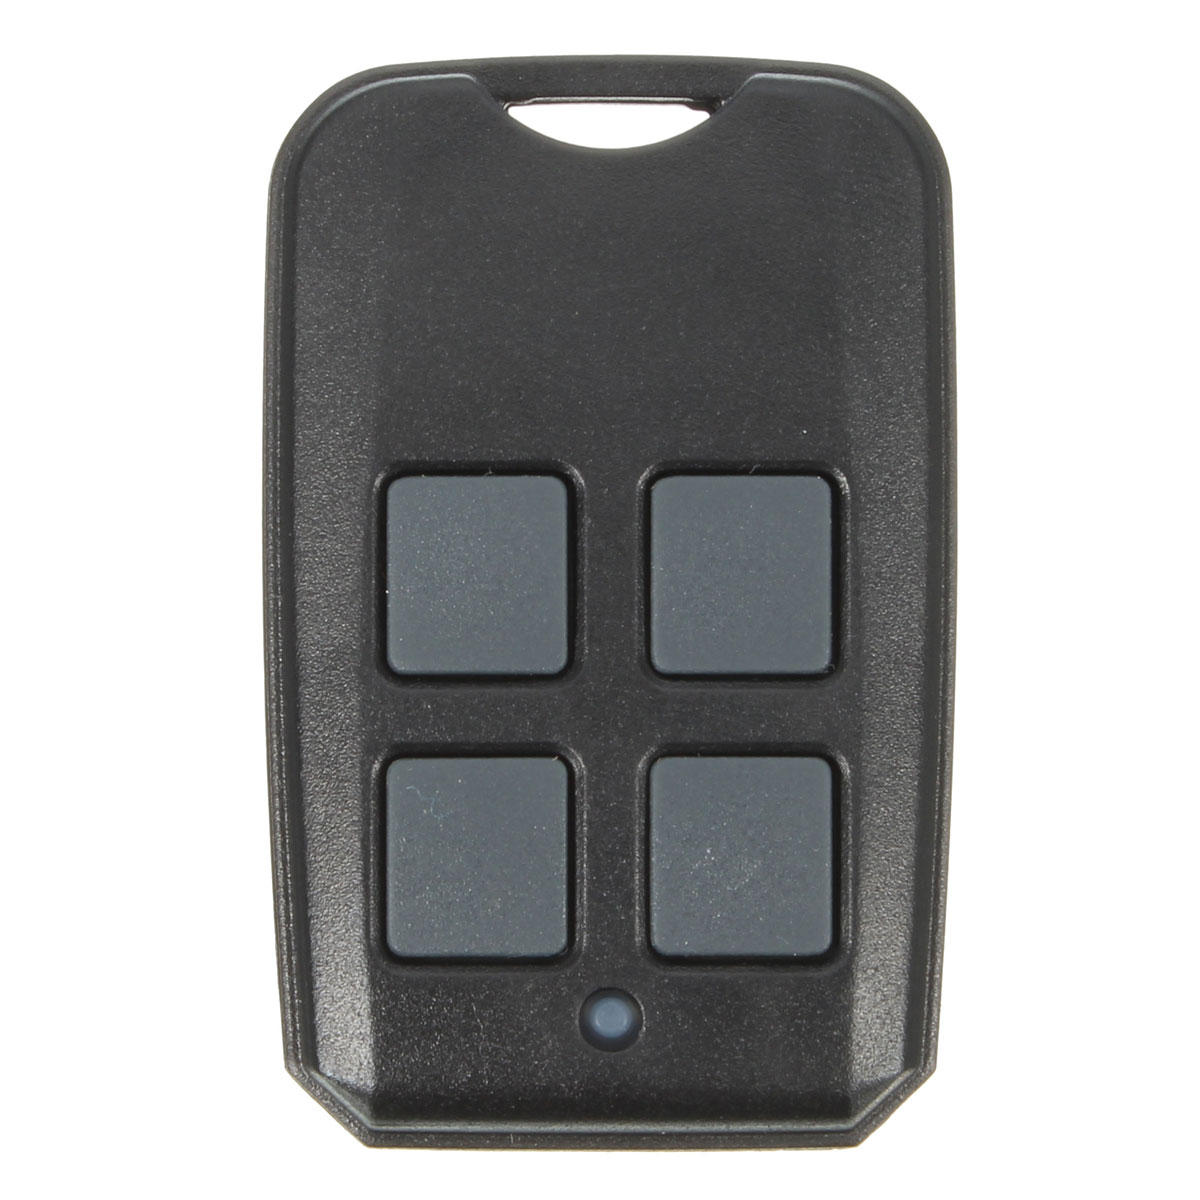 4 Button 315/390MHz Garage Gate Remote Control For G3T-BX GIC GIT OCDT 37218R 